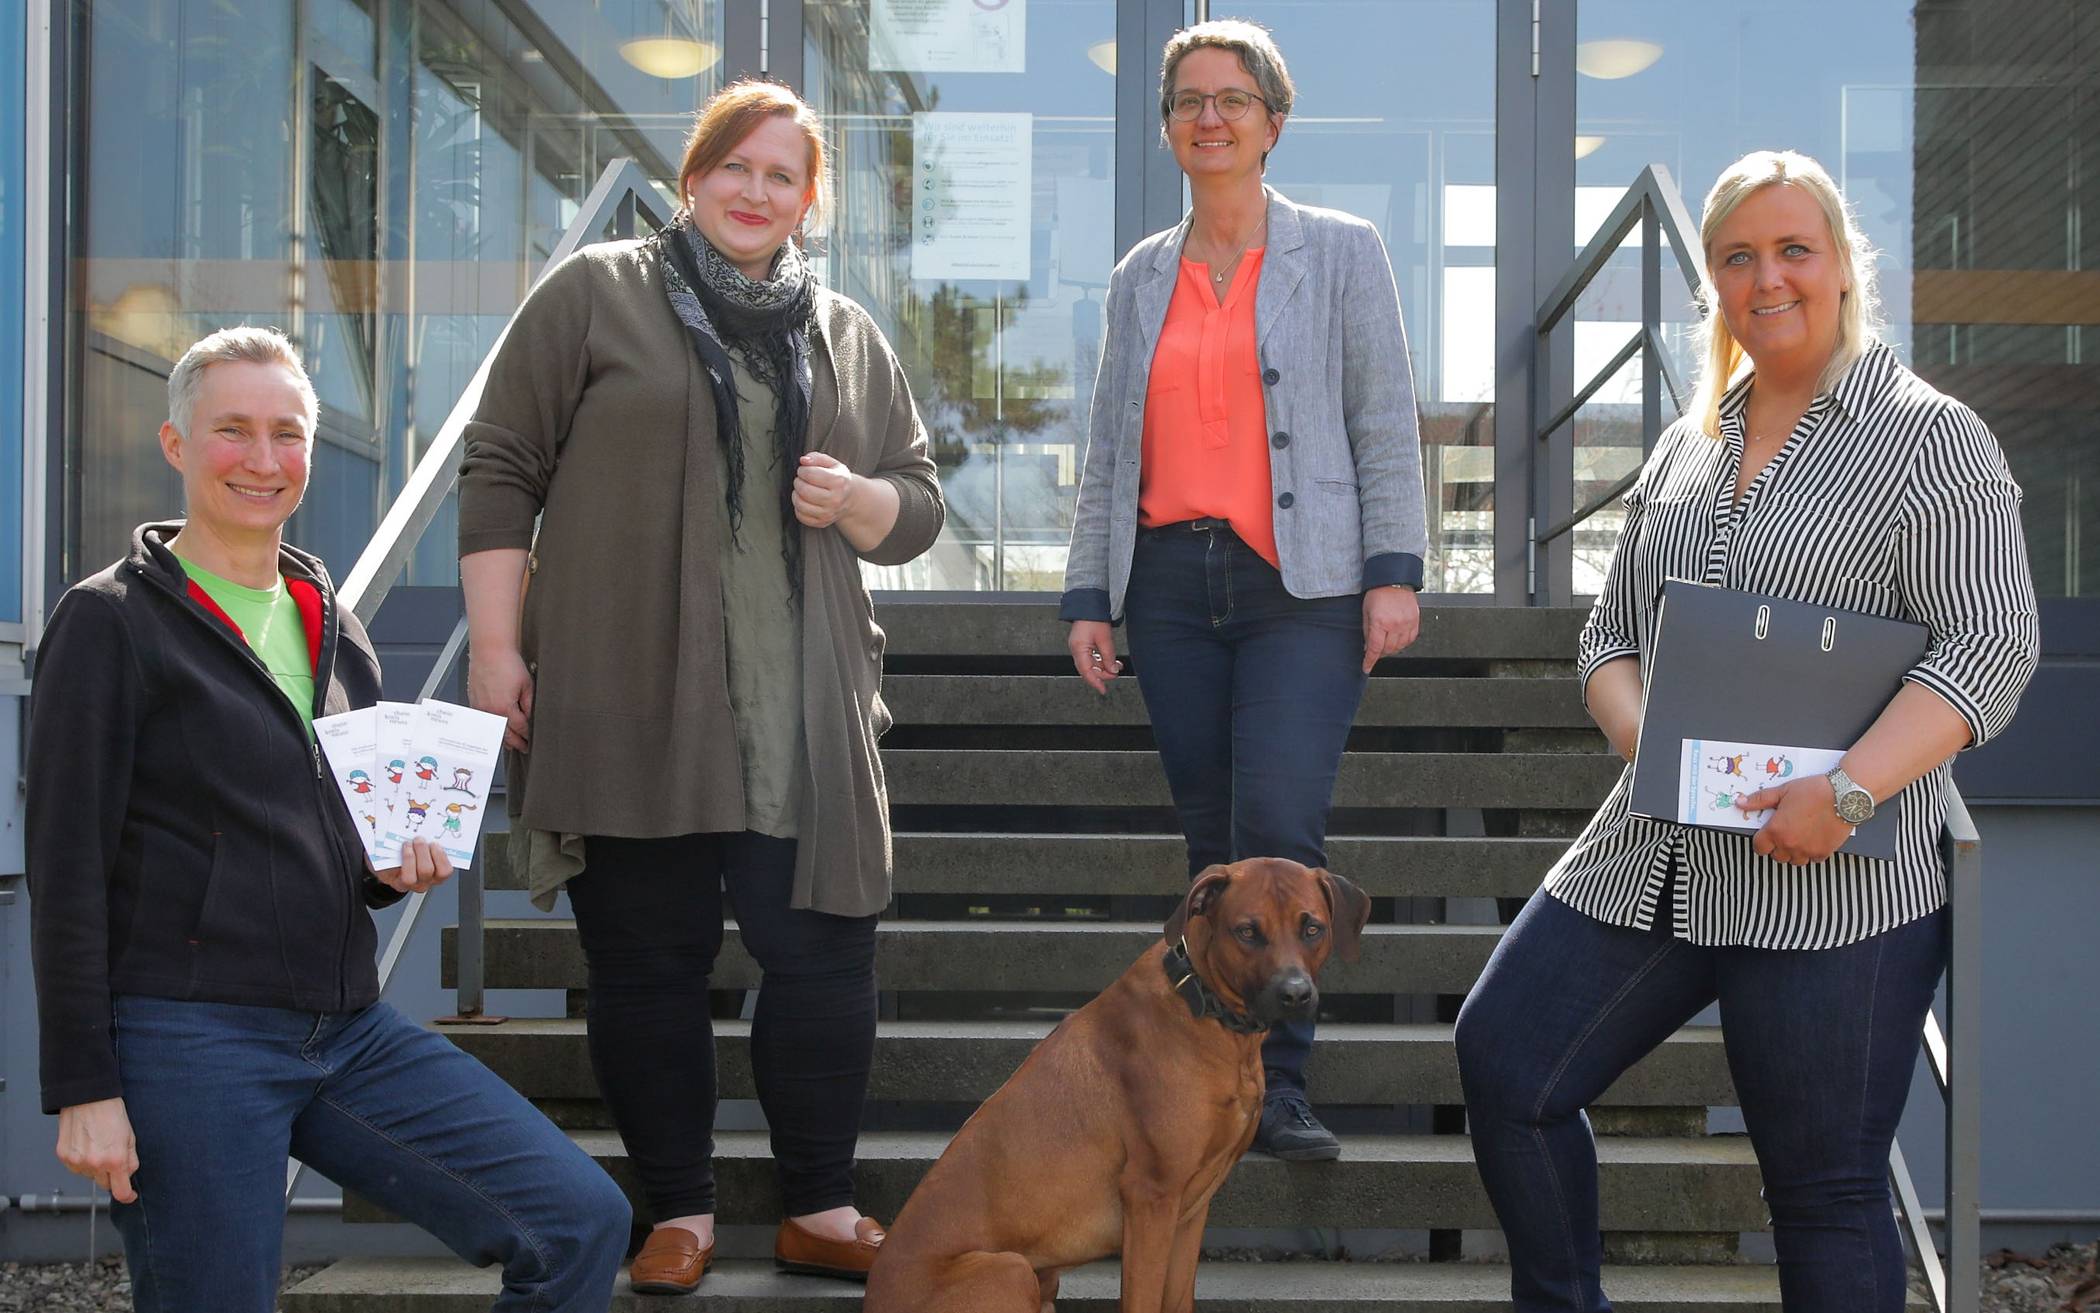  Lisa Fischer-Schreiber (Leiterin des Sprachtherapeutischen Dienstes) mit drei Team-Mitarbeitern und Therapiehund vor dem „Haus der Gesundheit“ in Grevenbroich. 